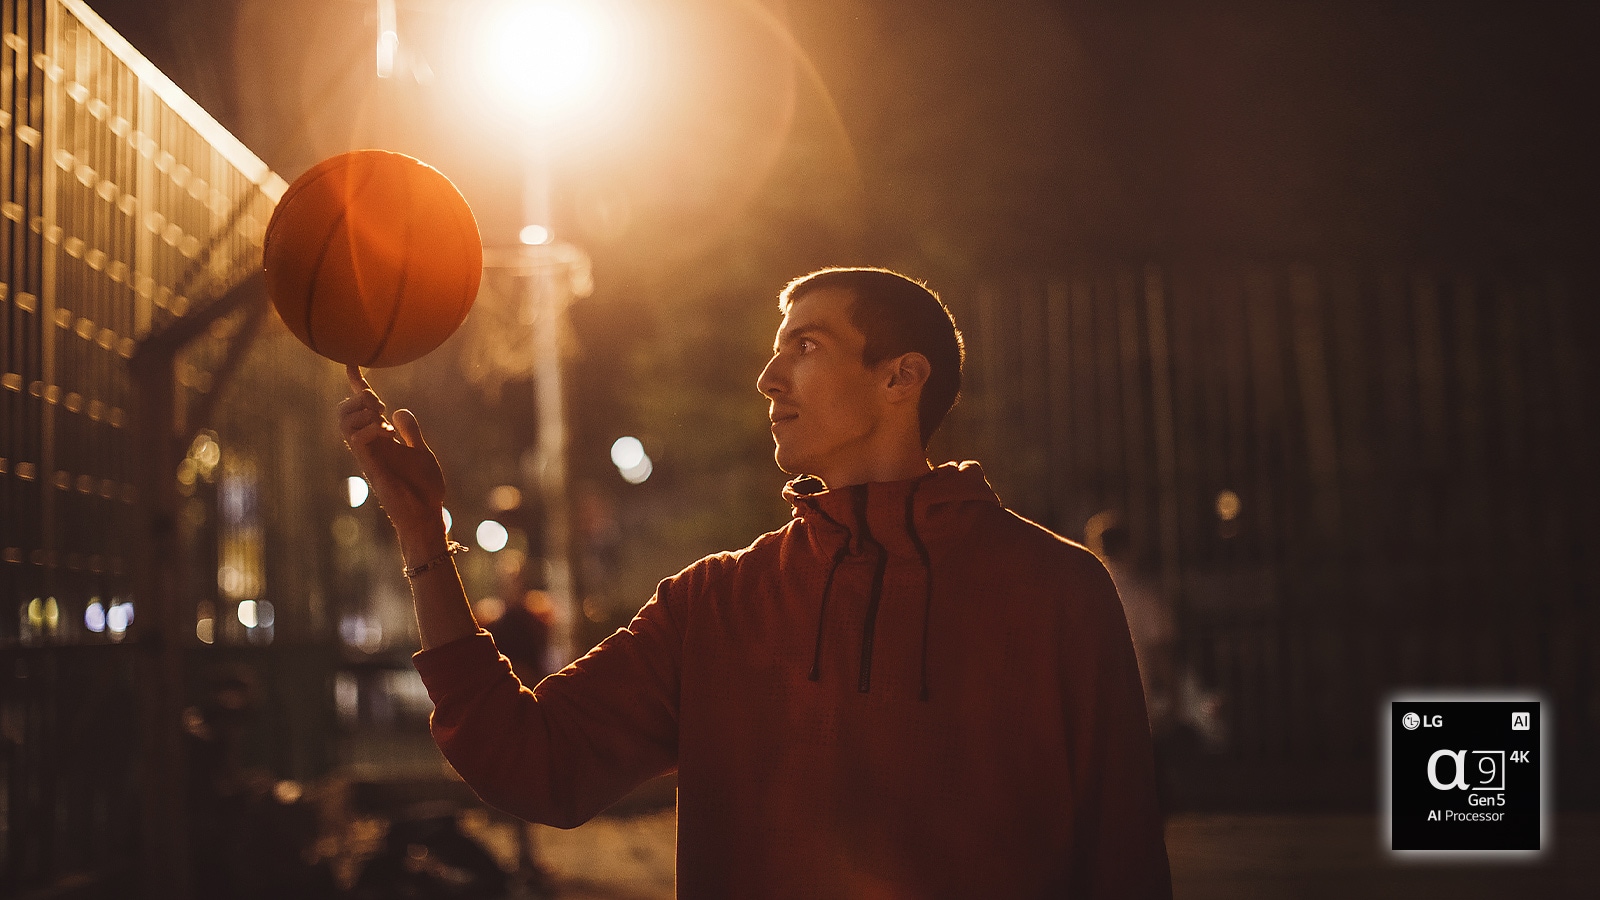 Một người đàn ông trên sân bóng rổ vào ban đêm biến một quả bóng rổ trên ngón tay